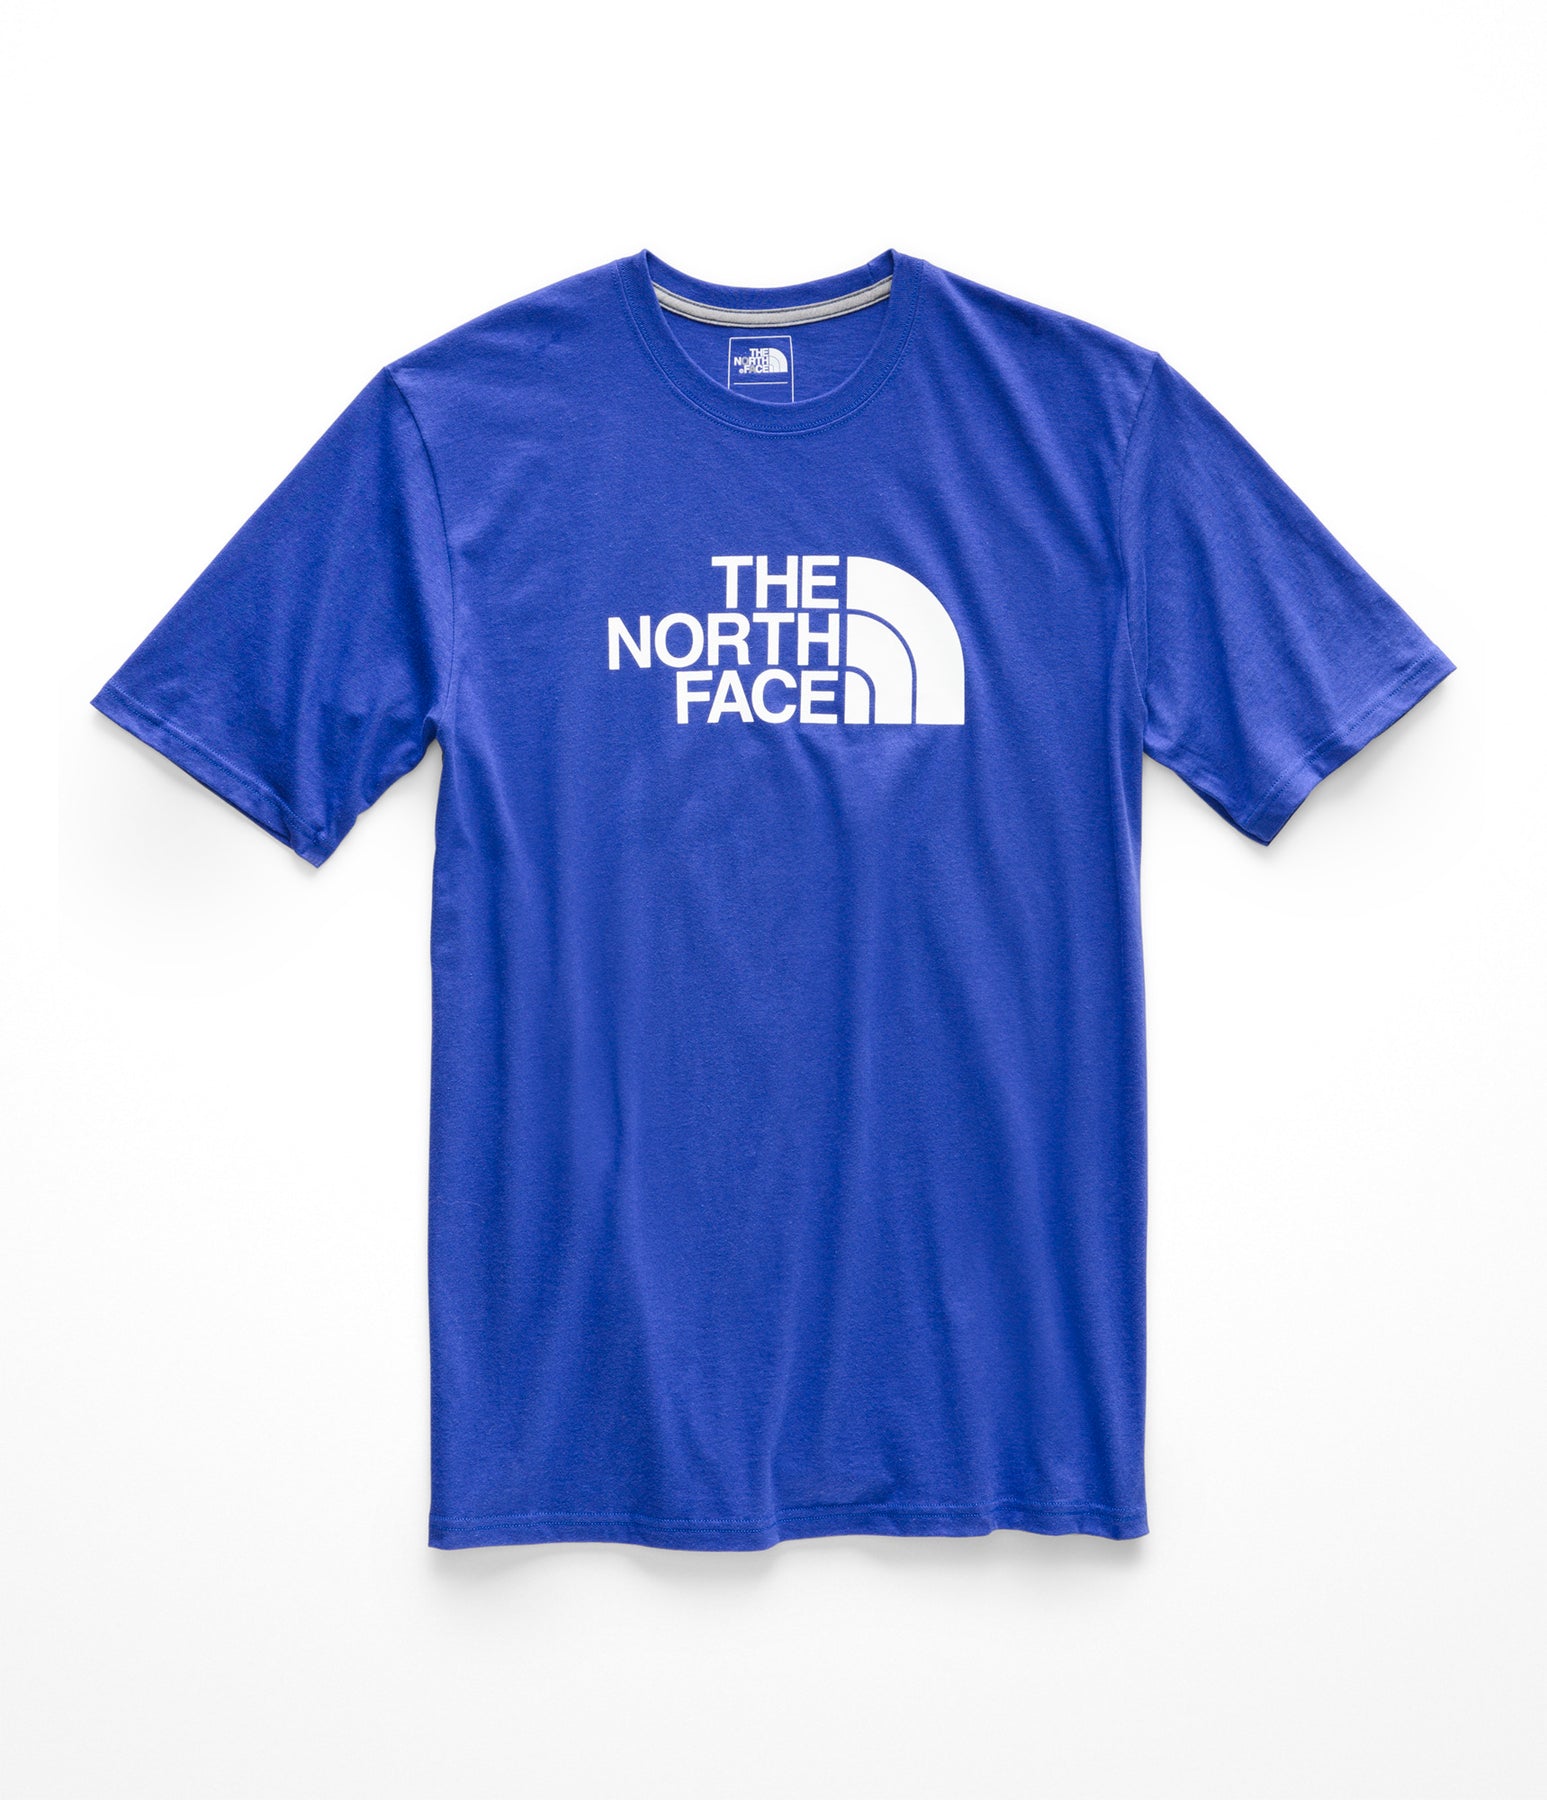 north face shirts